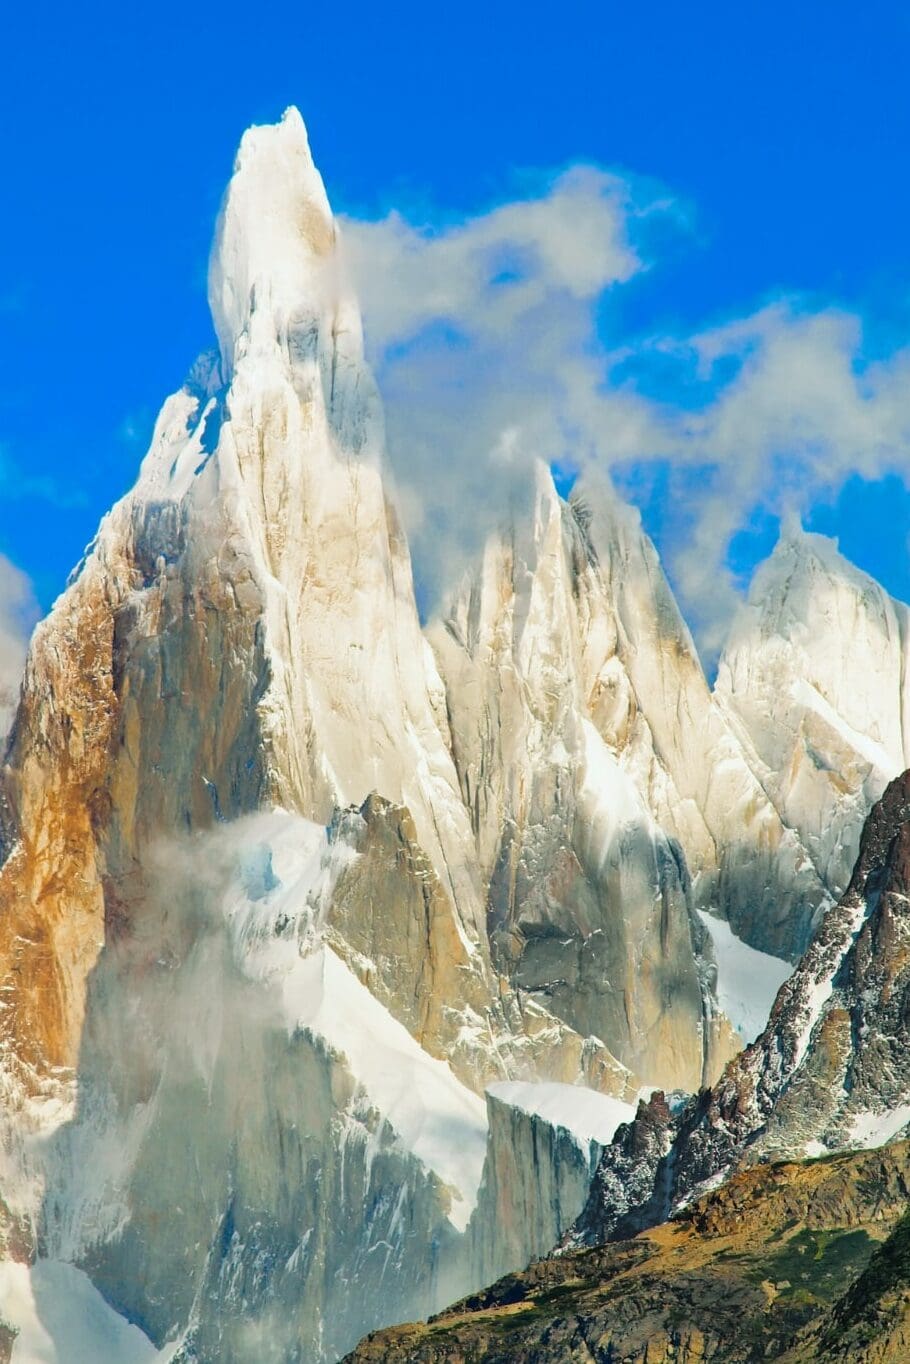 Cerro Torre, Patagonia, Argentina